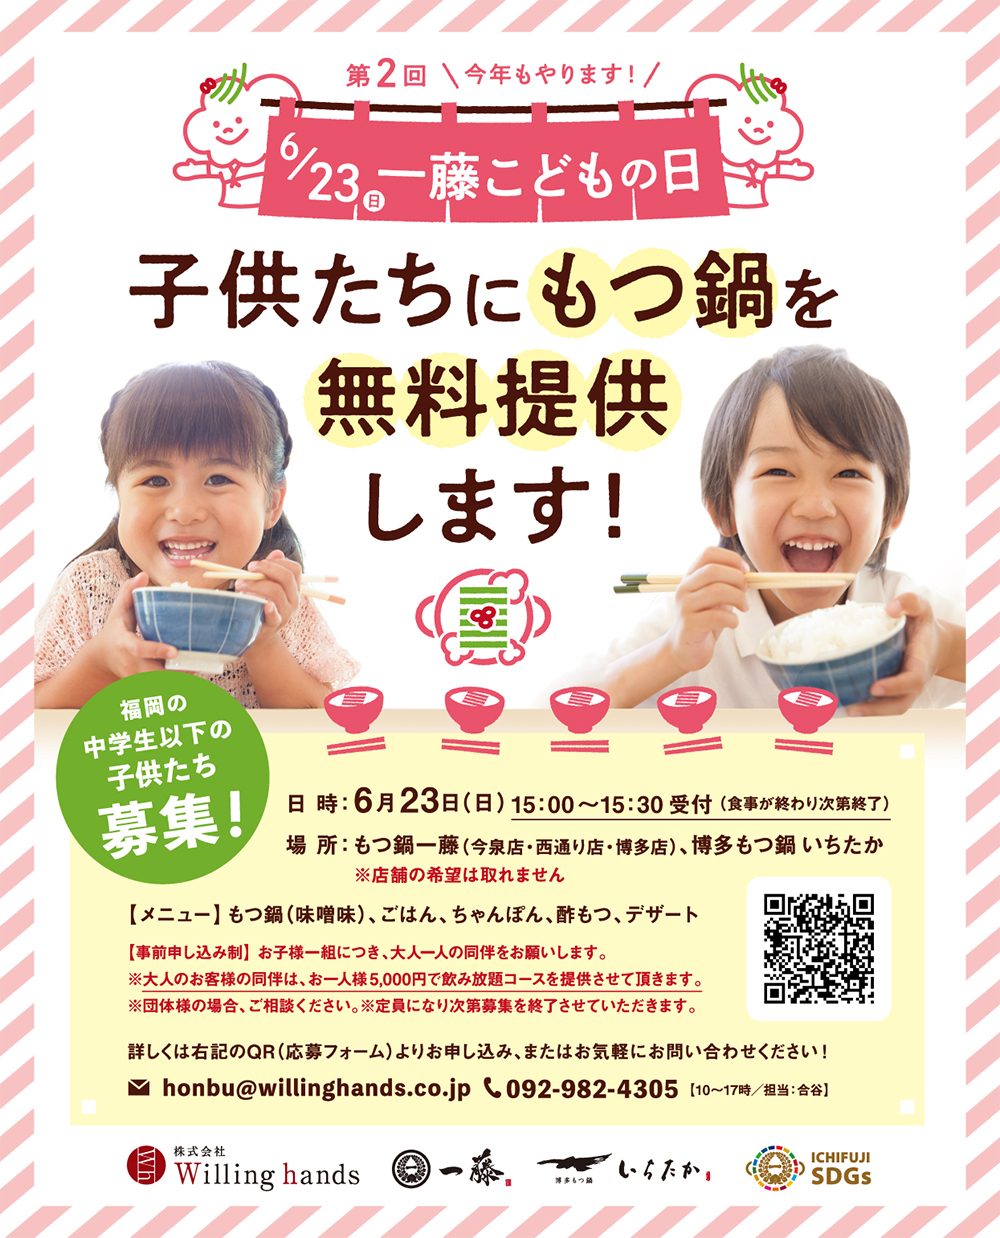 クラフトコーラ風呂”イヨシコーラの湯”、東京都浴場組合に所属するすべての銭湯、および大阪・愛知での実施が決定。100施設での実施を経て400施設以上へ急拡大！